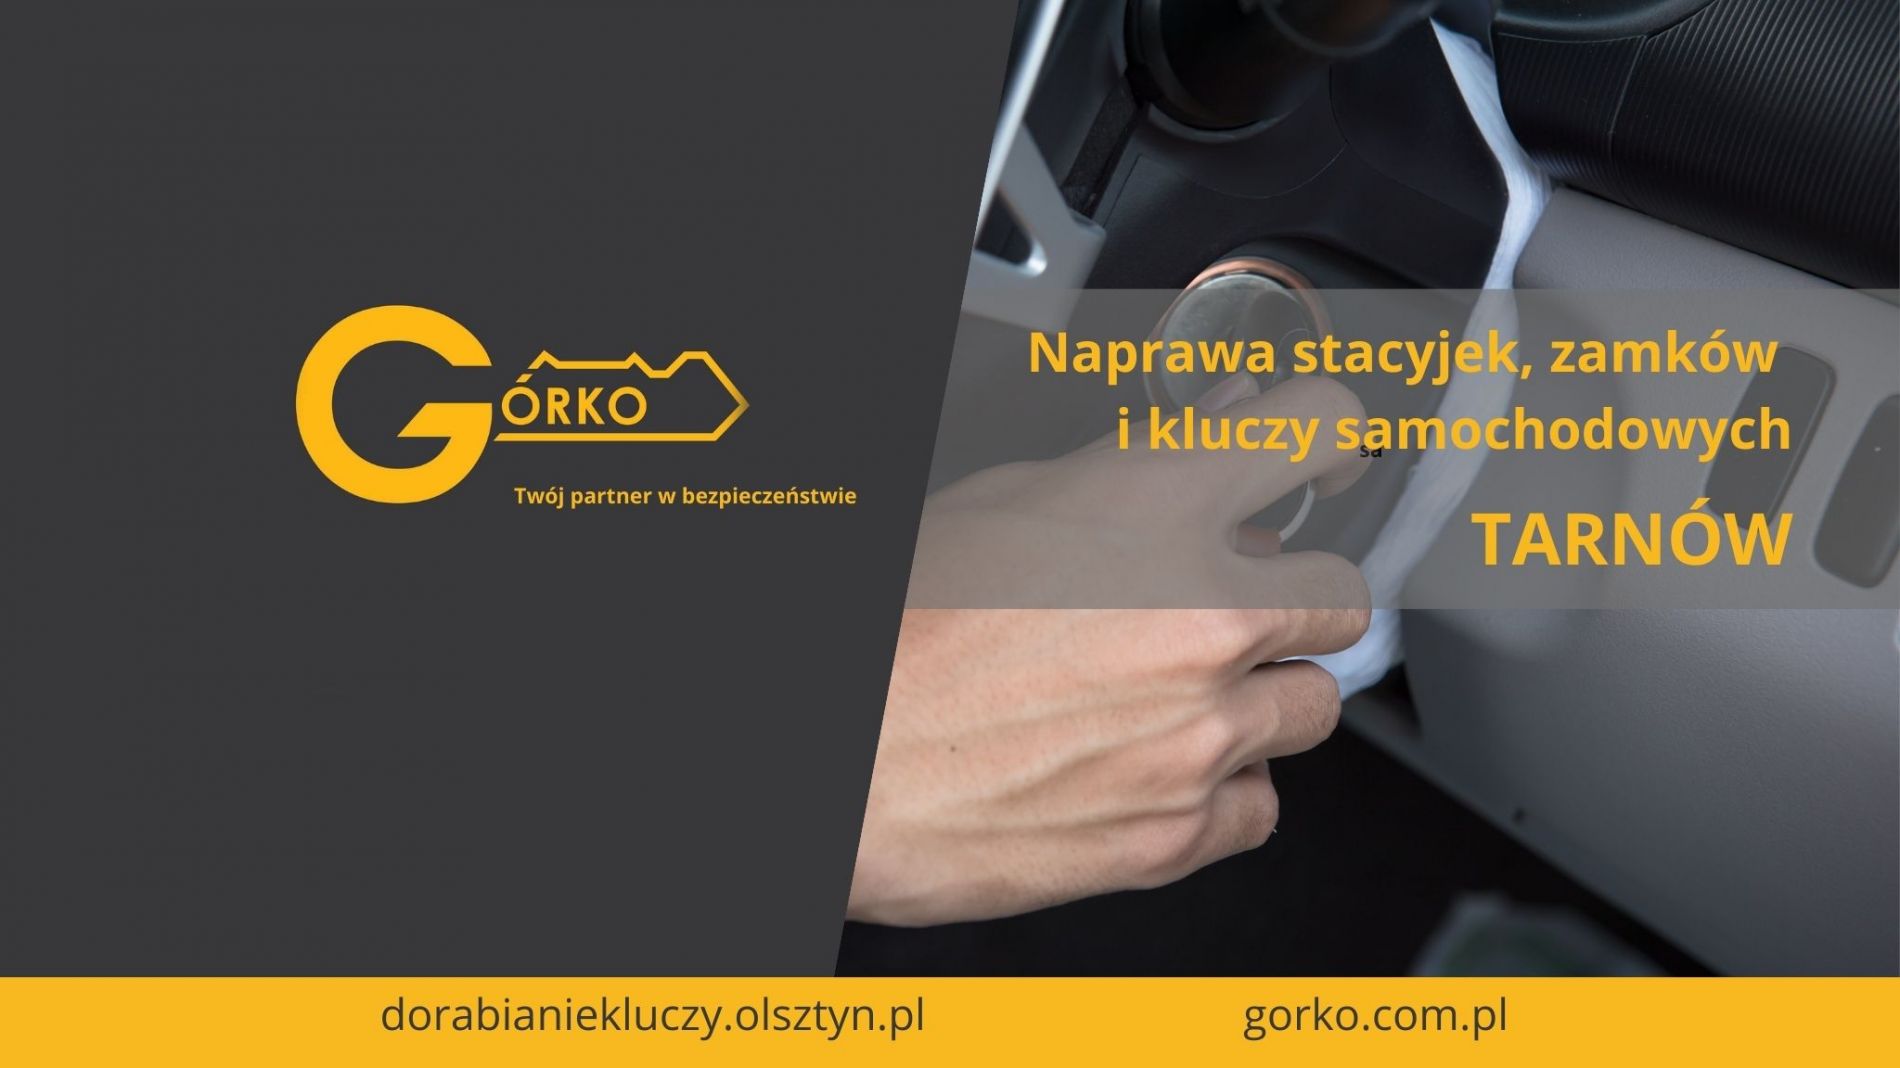 Naprawa stacyjek, zamków i kluczy samochodowych – Tarnów (Usługa zdalna)